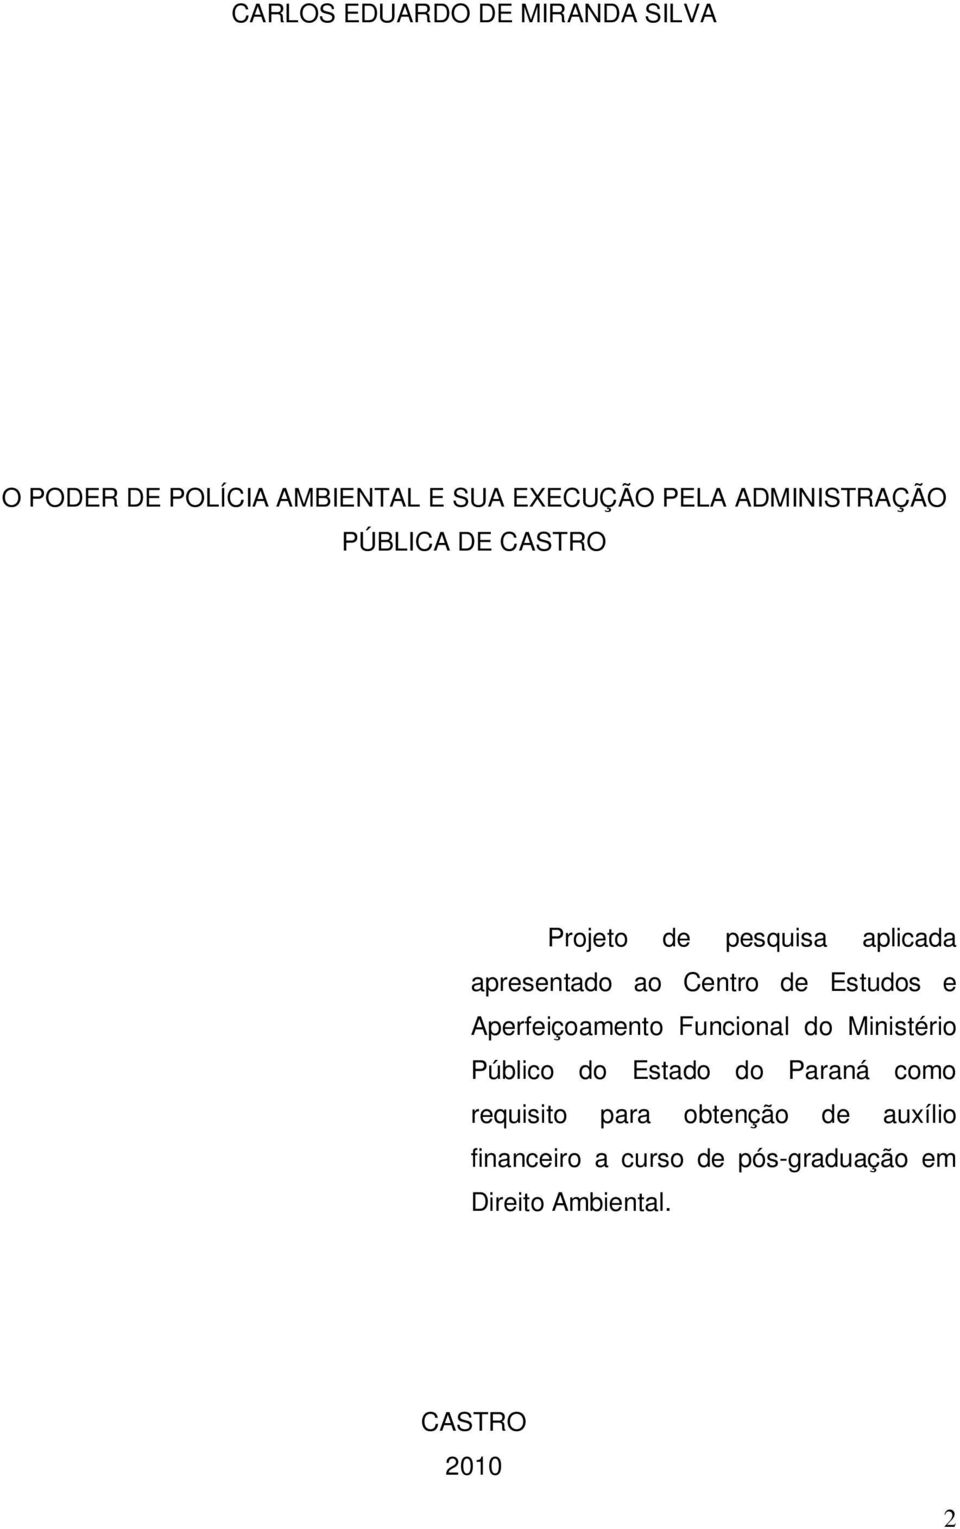 Estudos e Aperfeiçoamento Funcional do Ministério Público do Estado do Paraná como